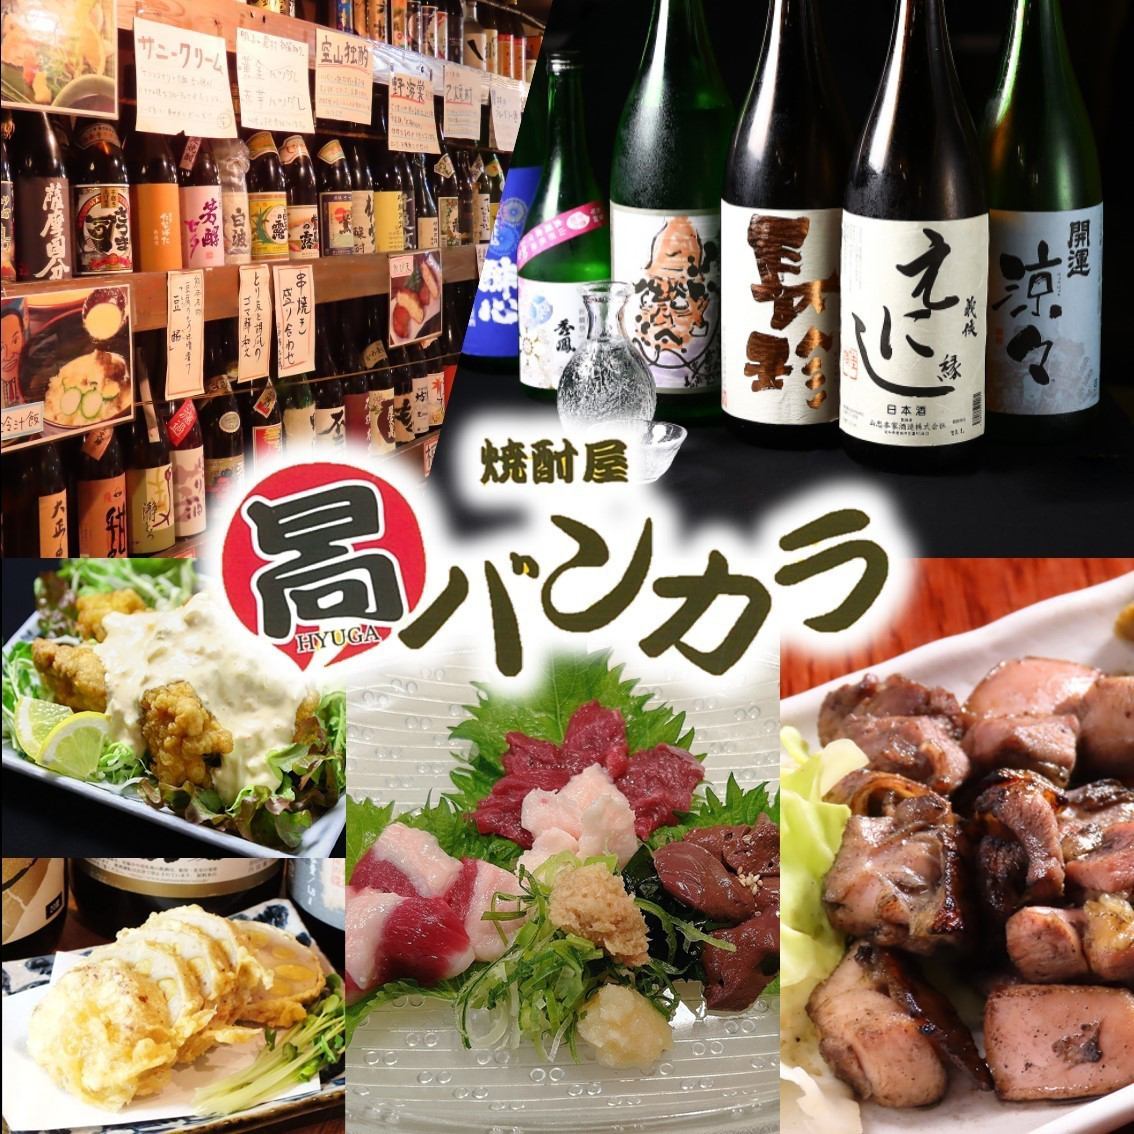 名古屋・栄で大将が厳選した本格焼酎300種類が楽しめる宮崎、九州料理居酒屋